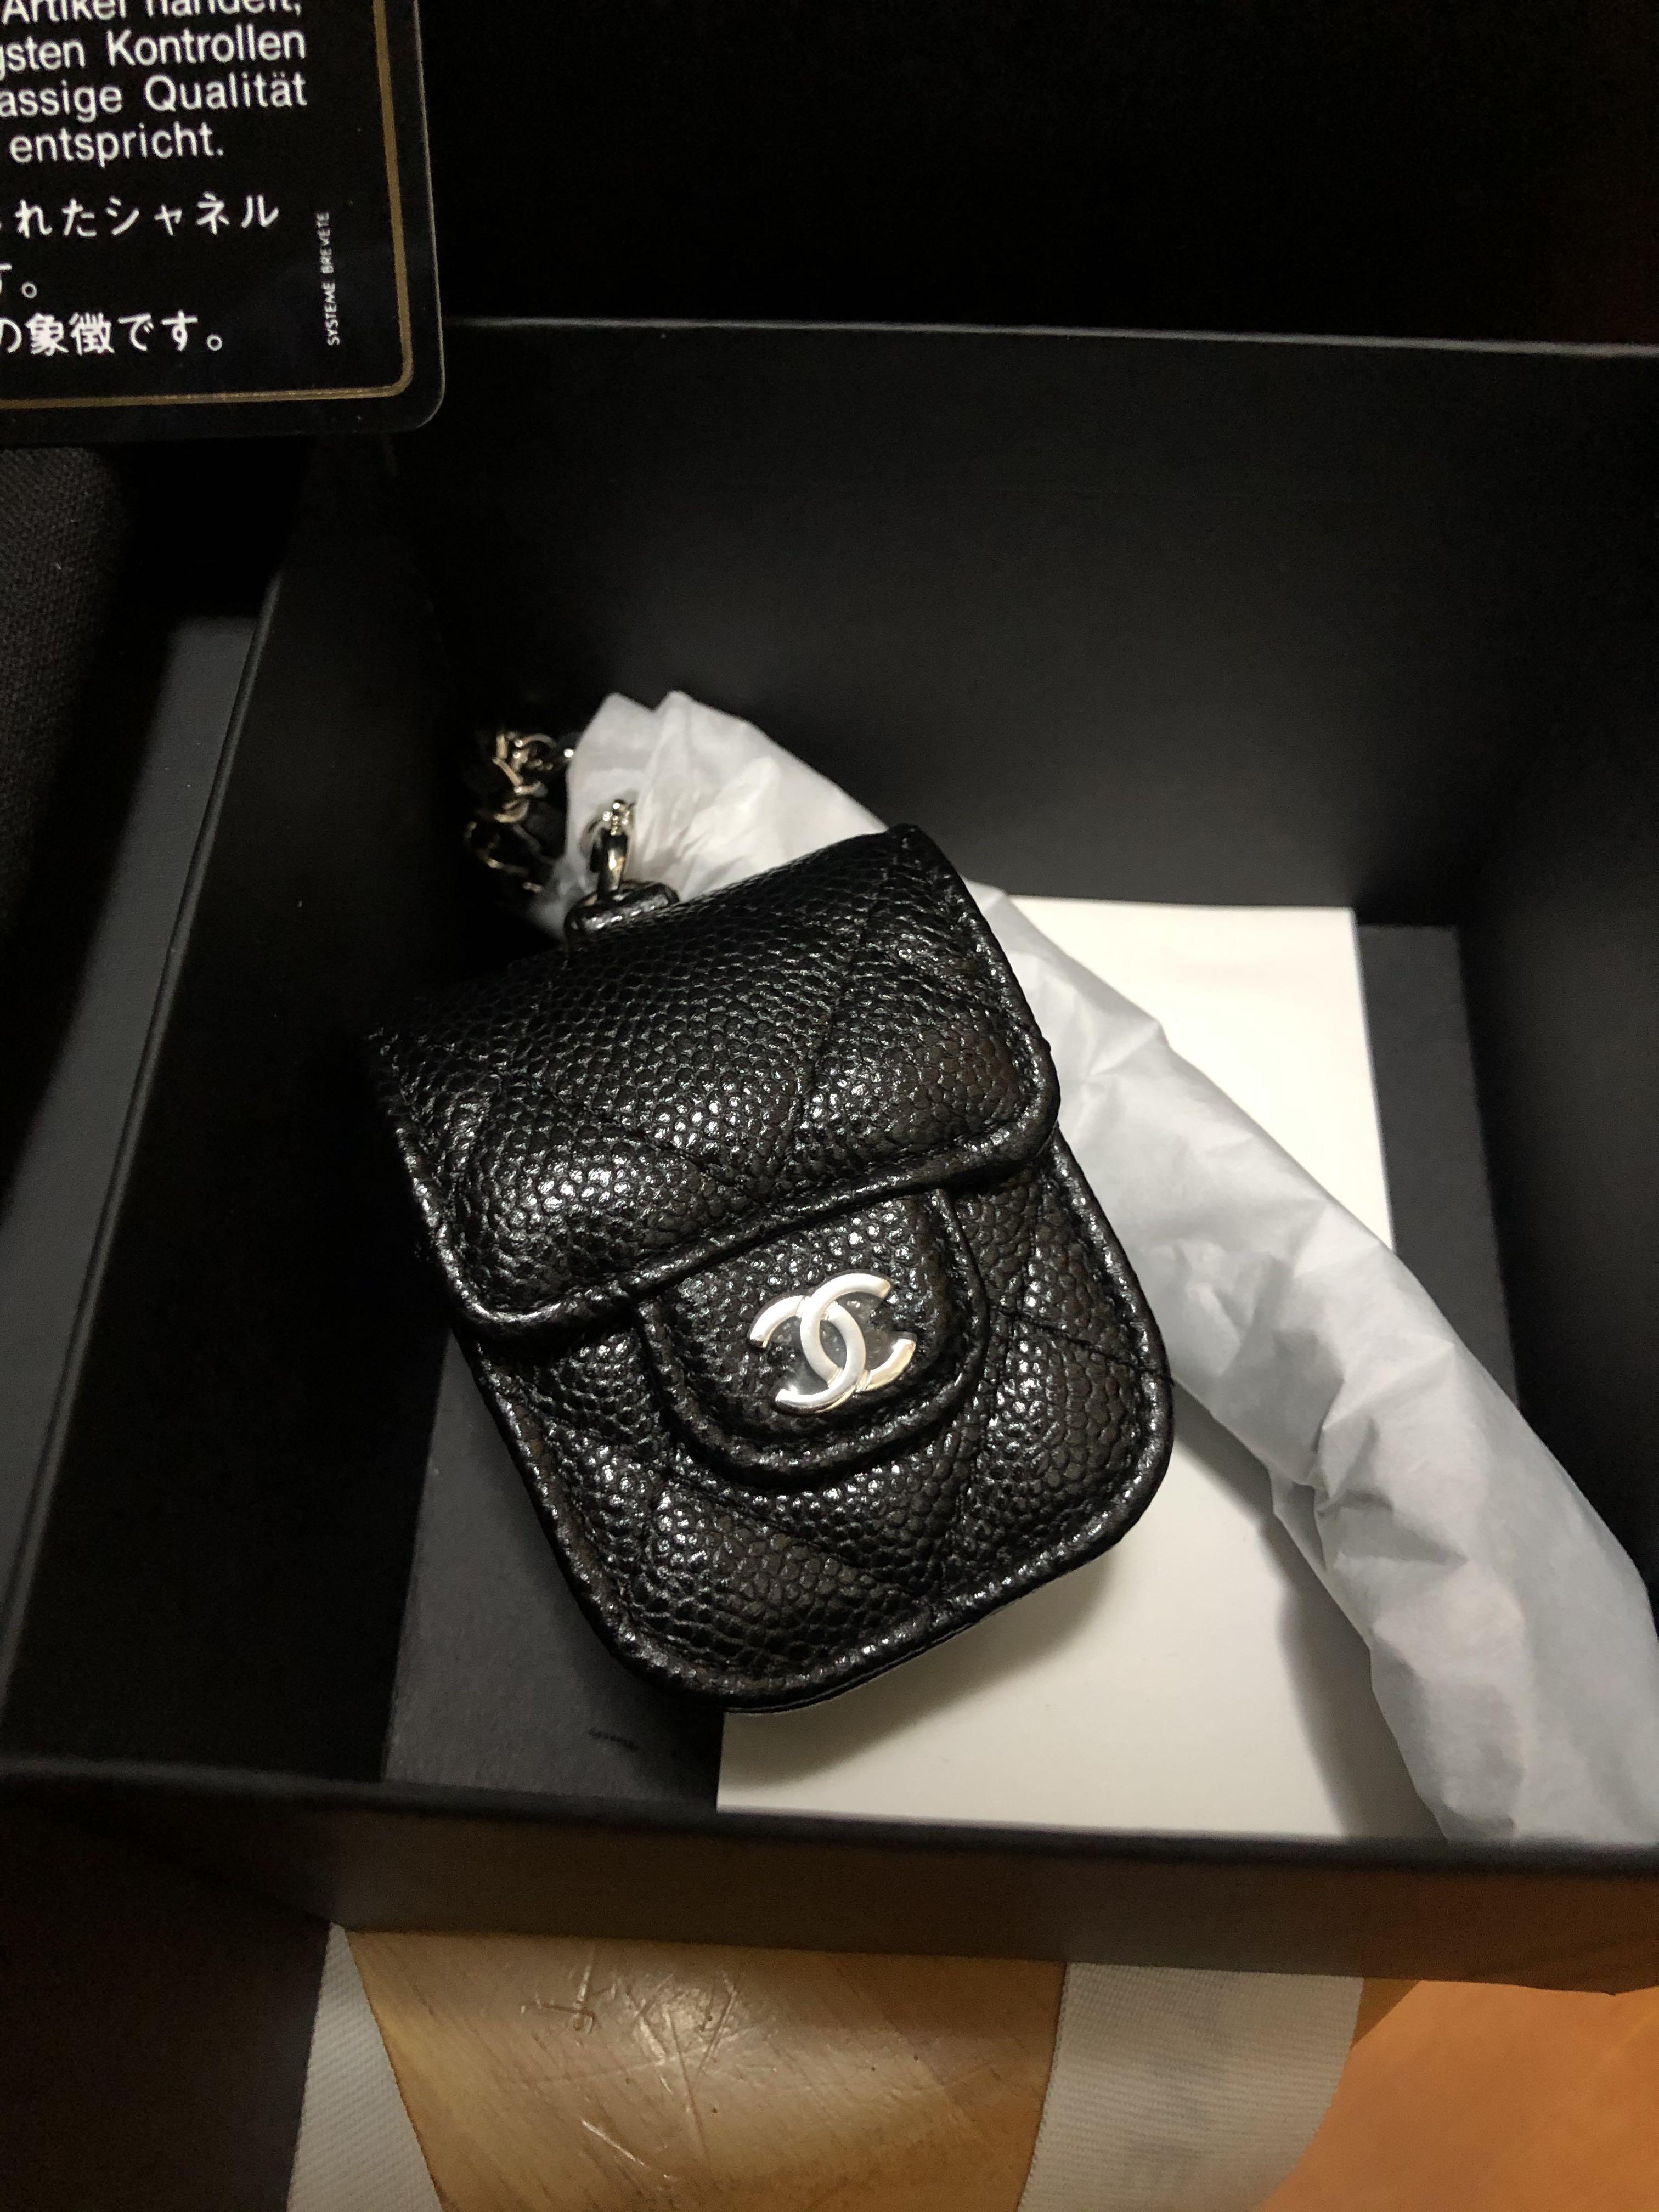 全新真品熱搶款Chanel AirPods Case with Chain 黑色牛皮荔枝皮菱格銀扣連銀鏈AirPod 第一代收納盒, 名牌,  手袋及銀包- Carousell